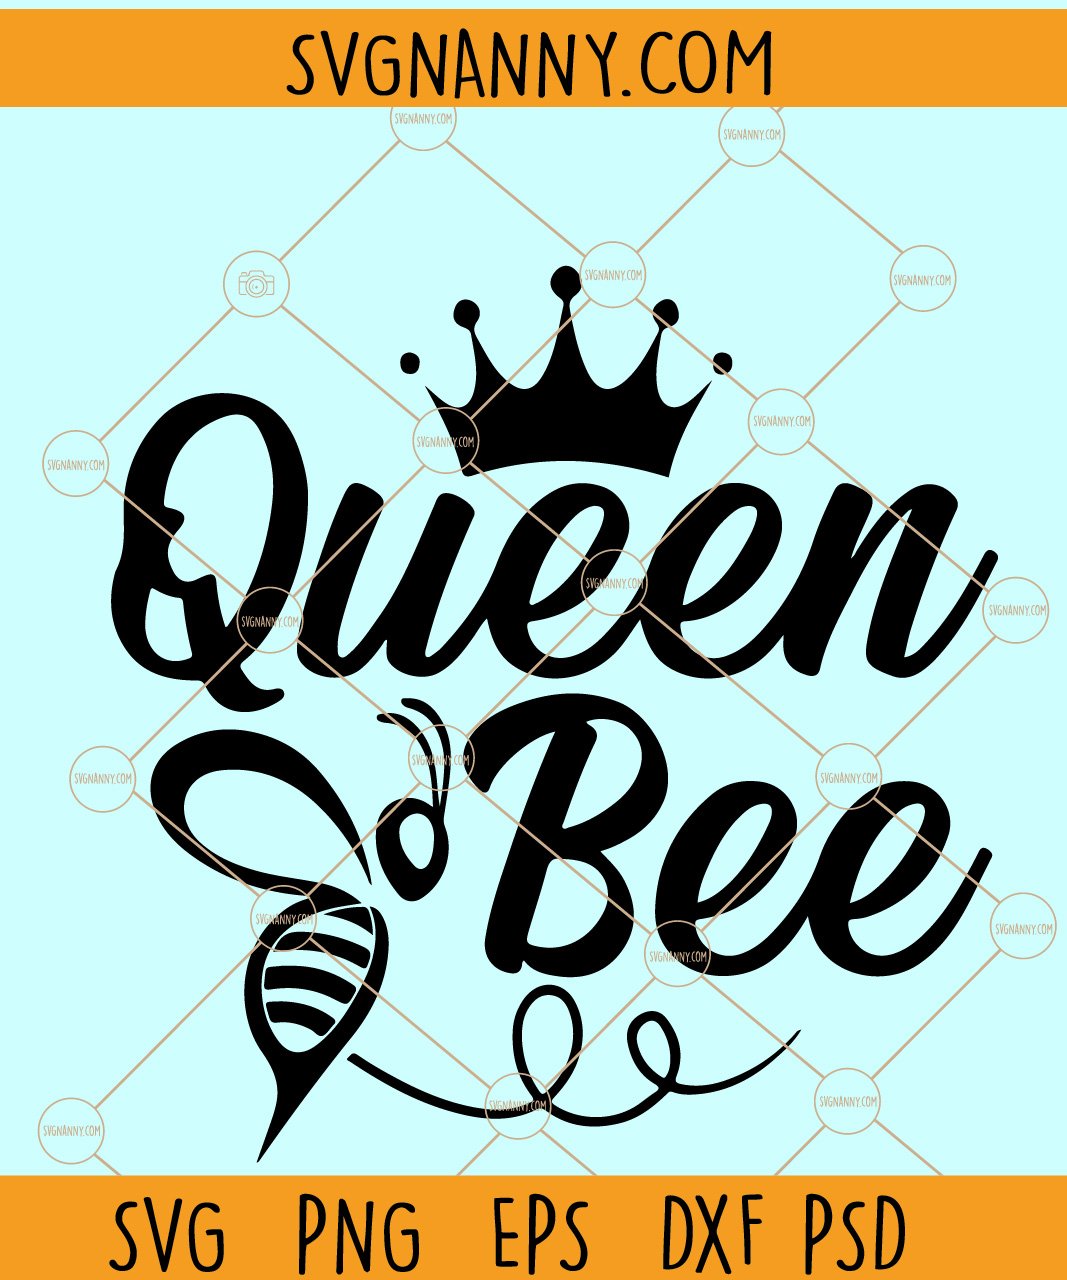 LOL Queen Bee SVG